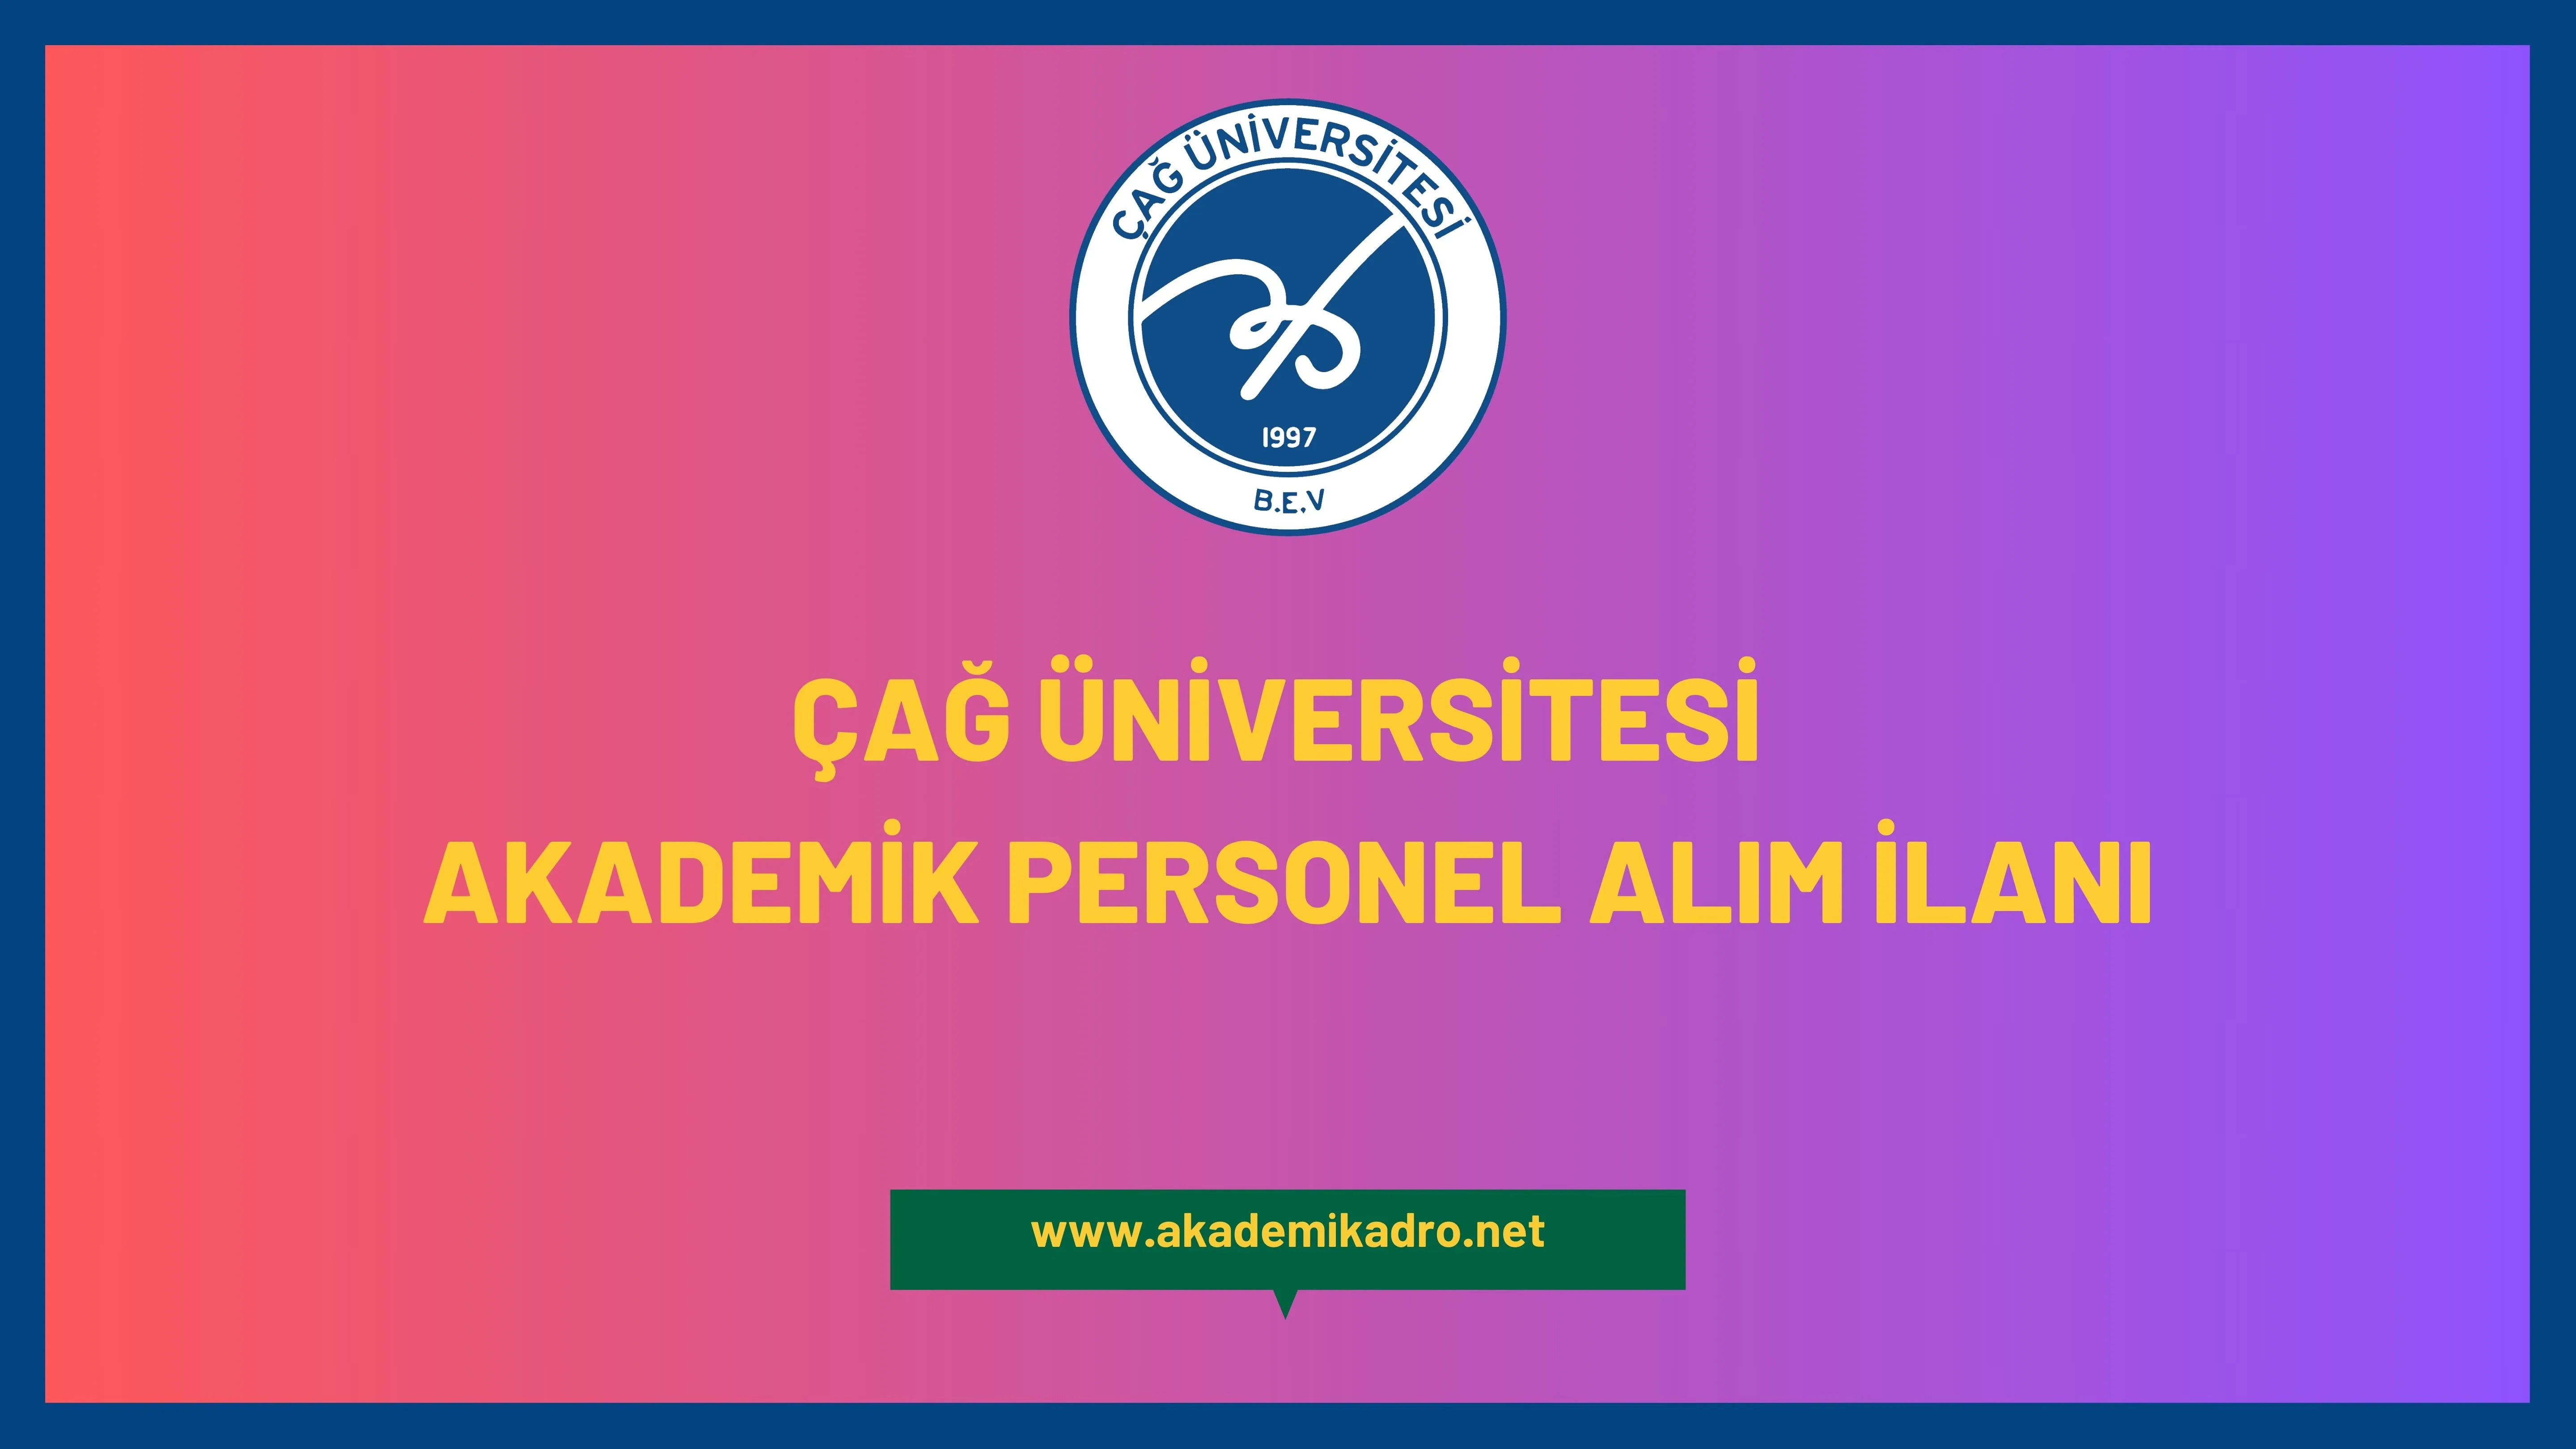 Çağ Üniversitesi 2 akademik personel alacaktır.